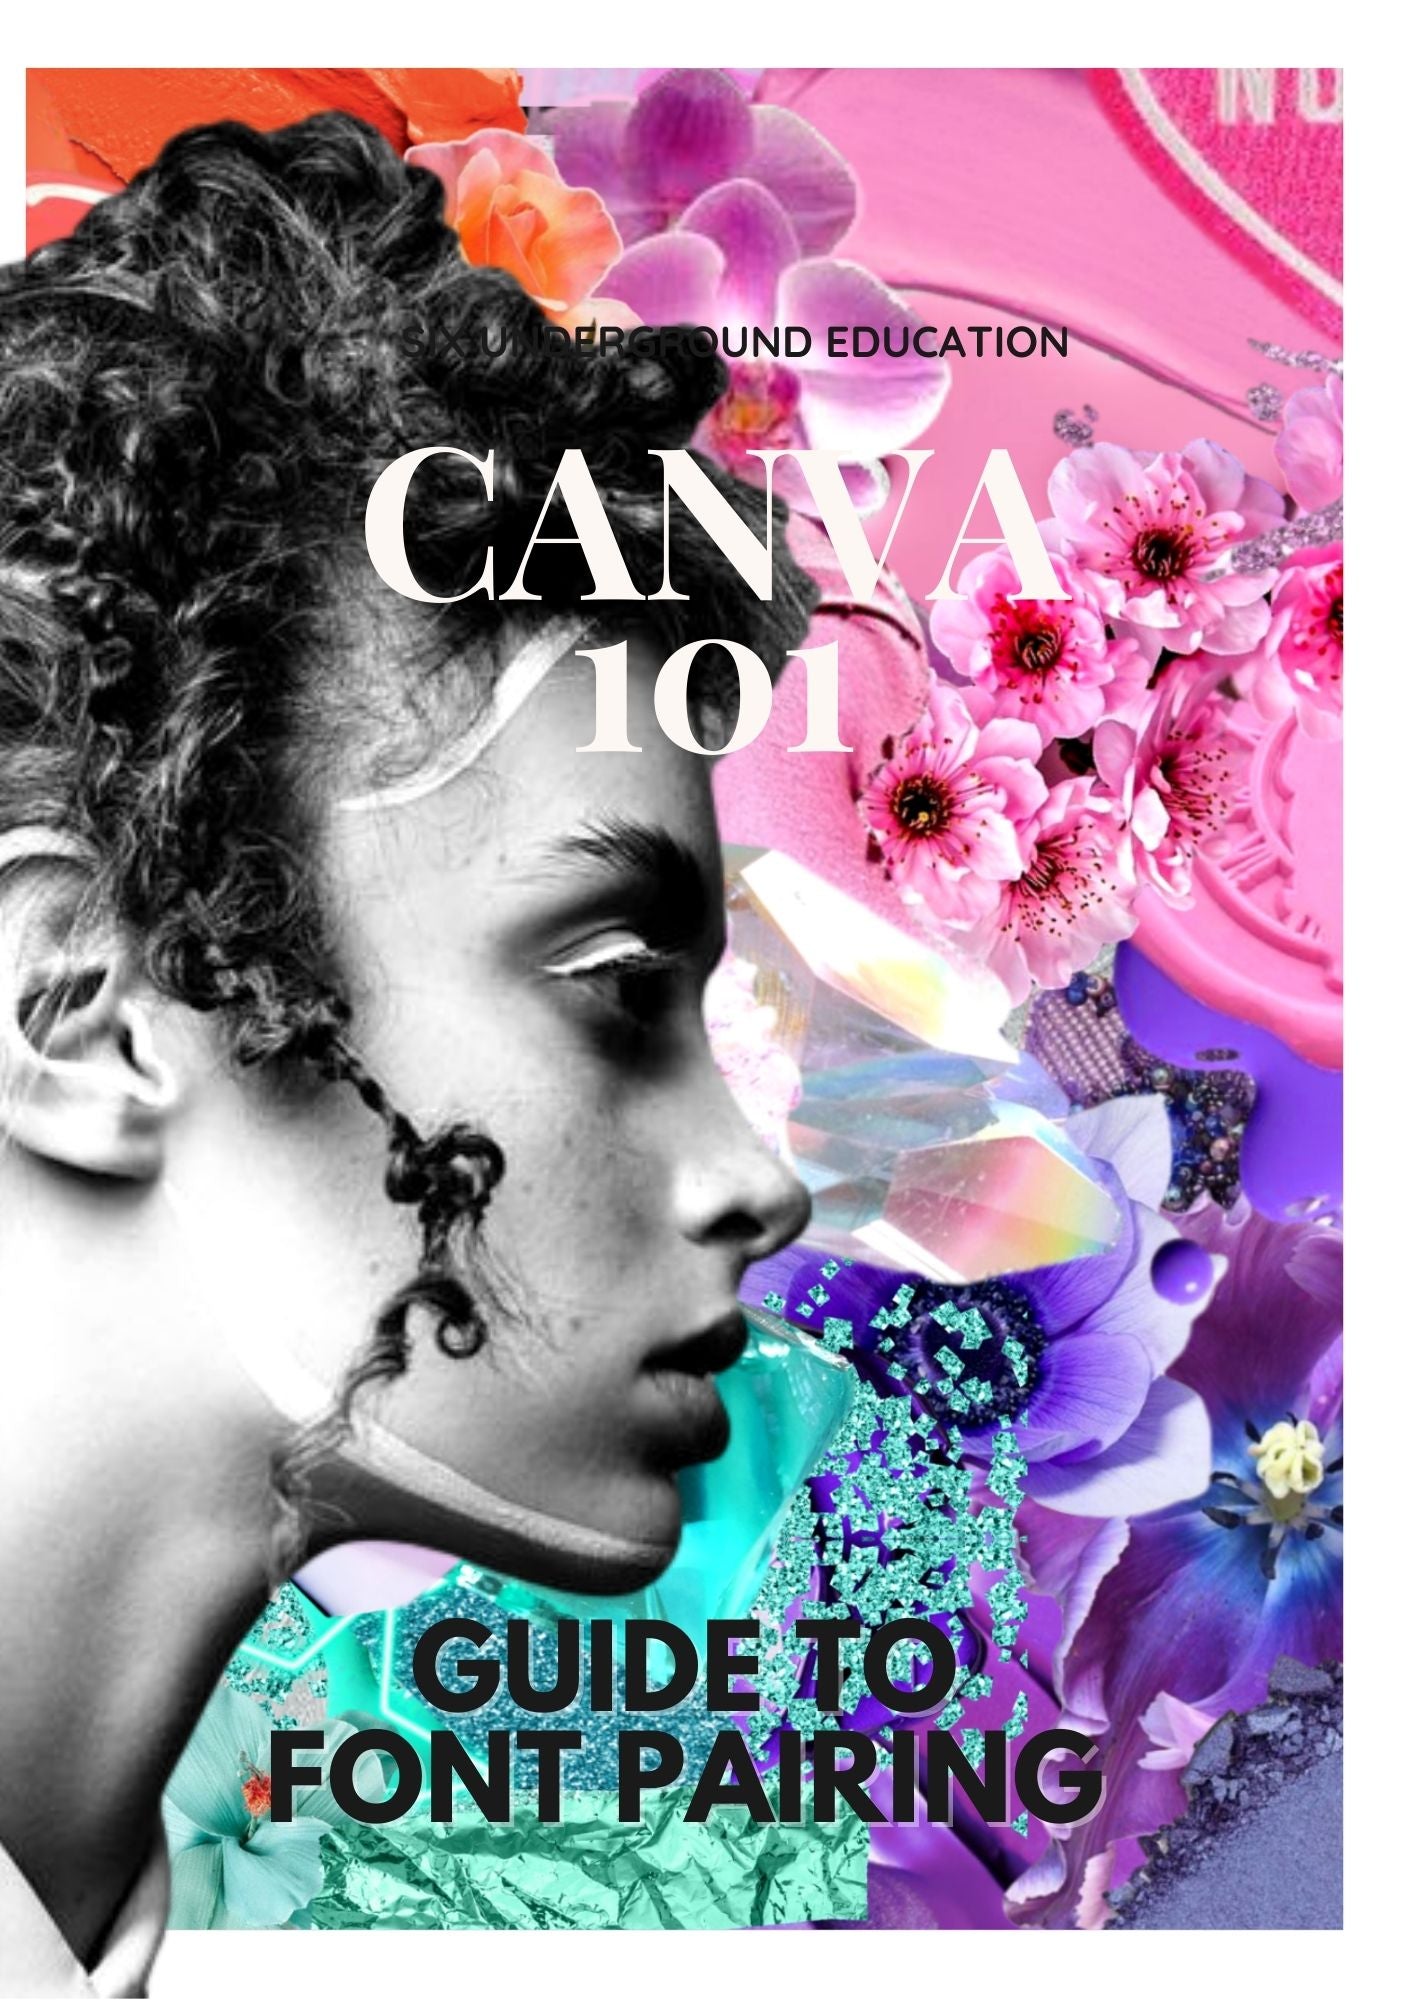 CANVA 101 - Salon Graphic Design Course